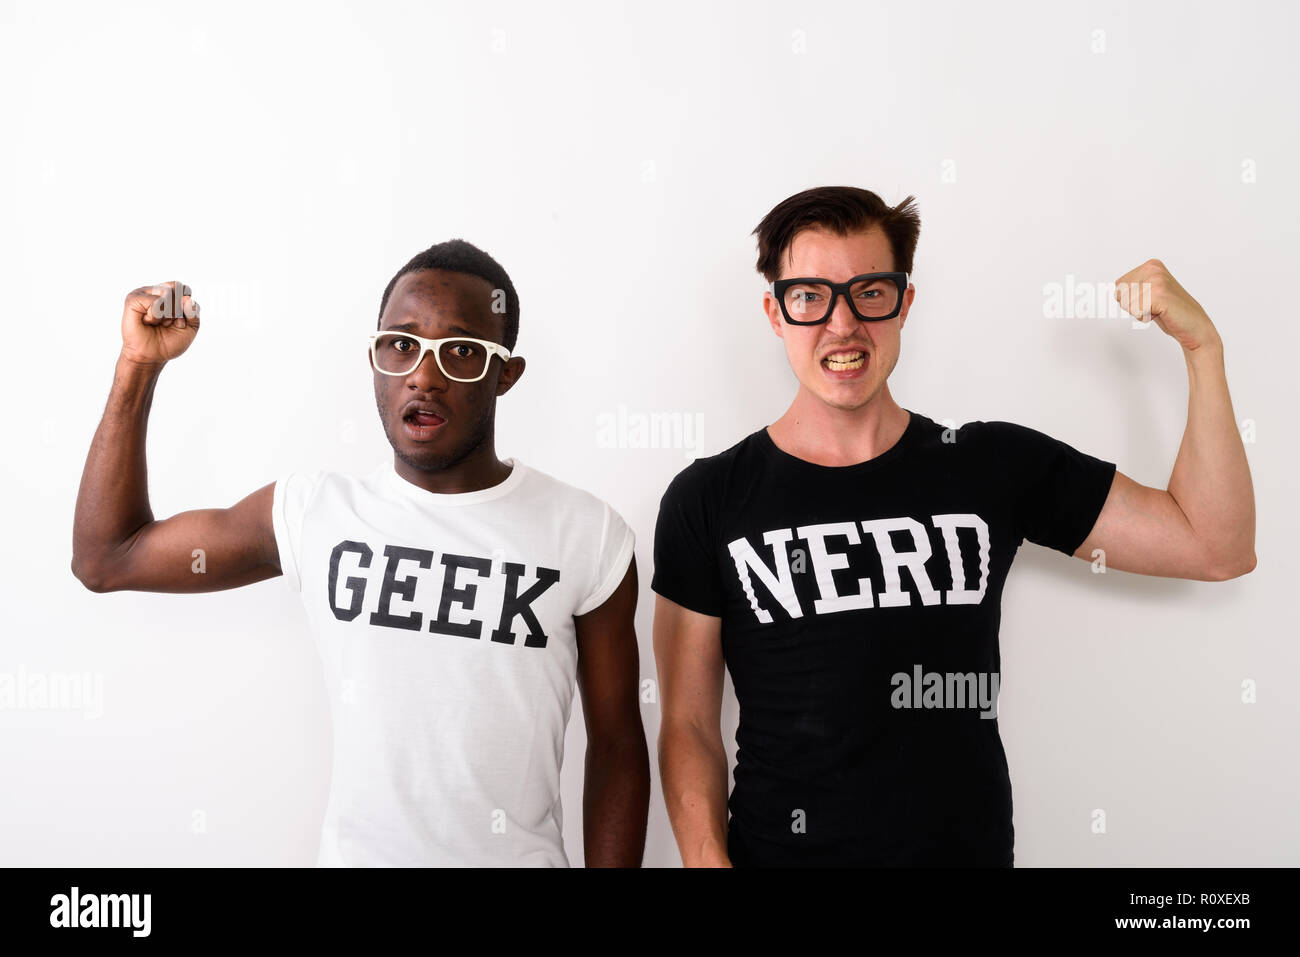 100 nerds vs 1 model